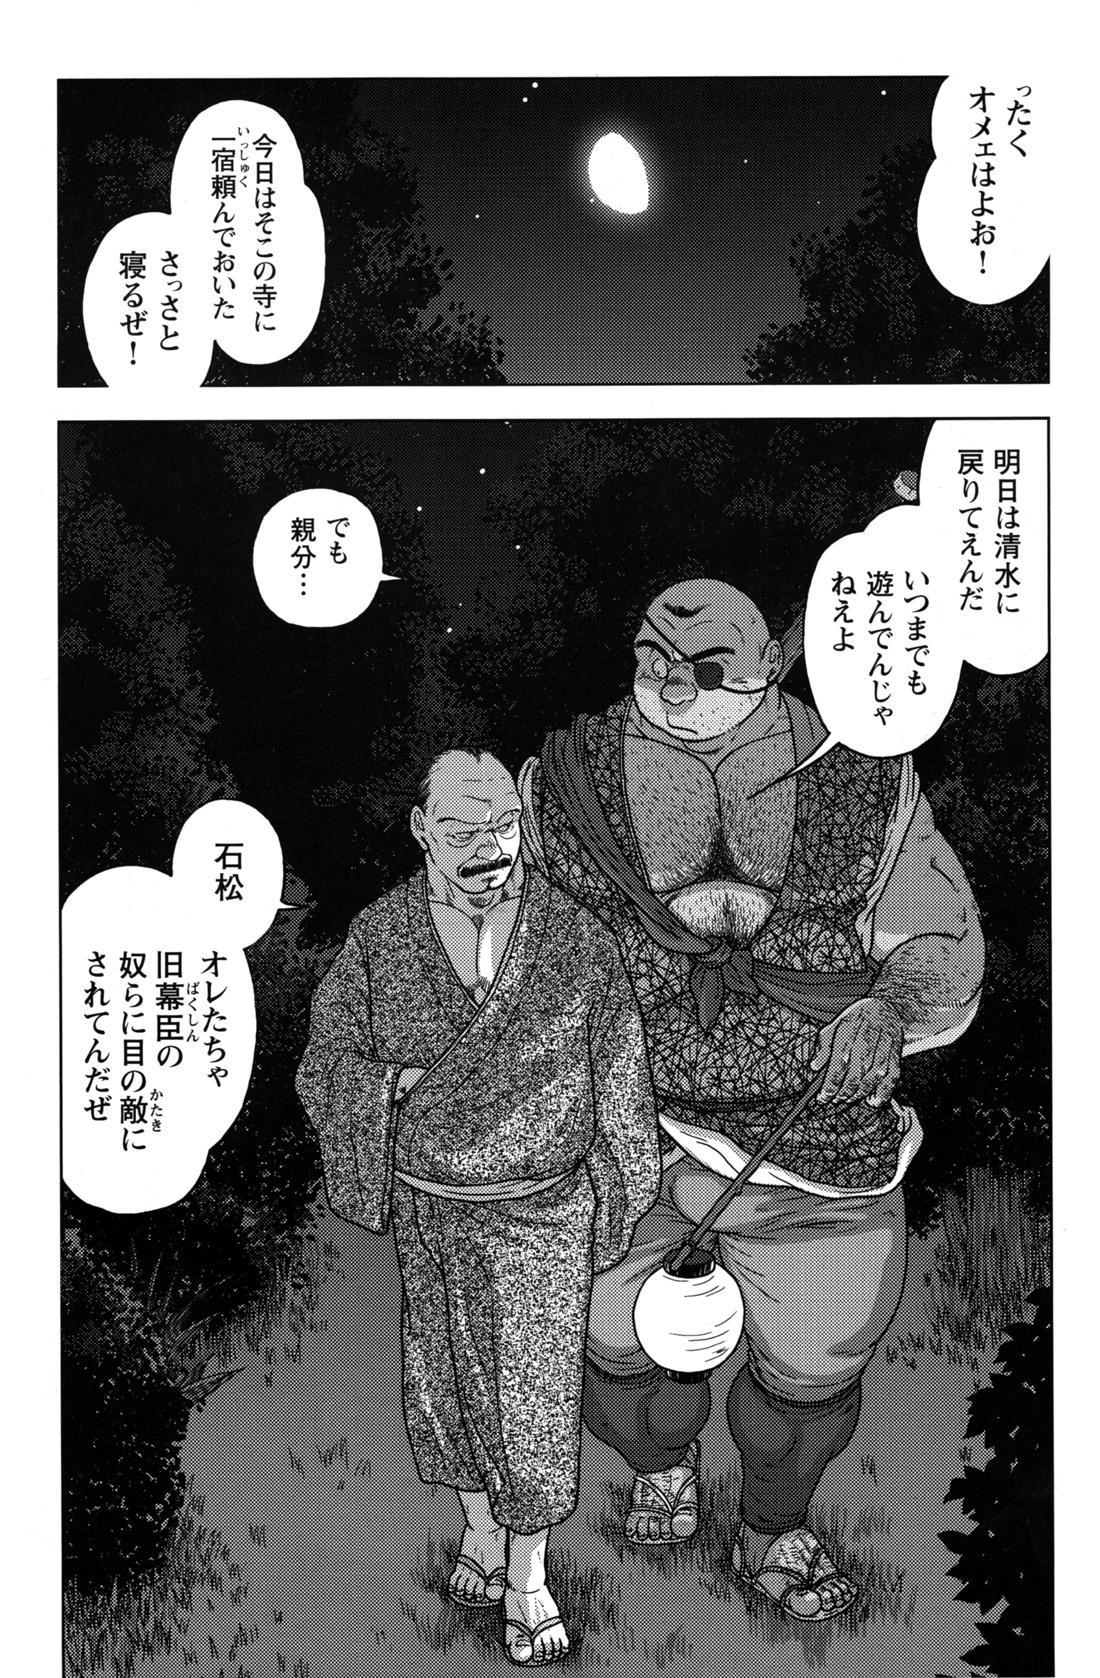 Comic G-men Gaho No.12 Aibou 159